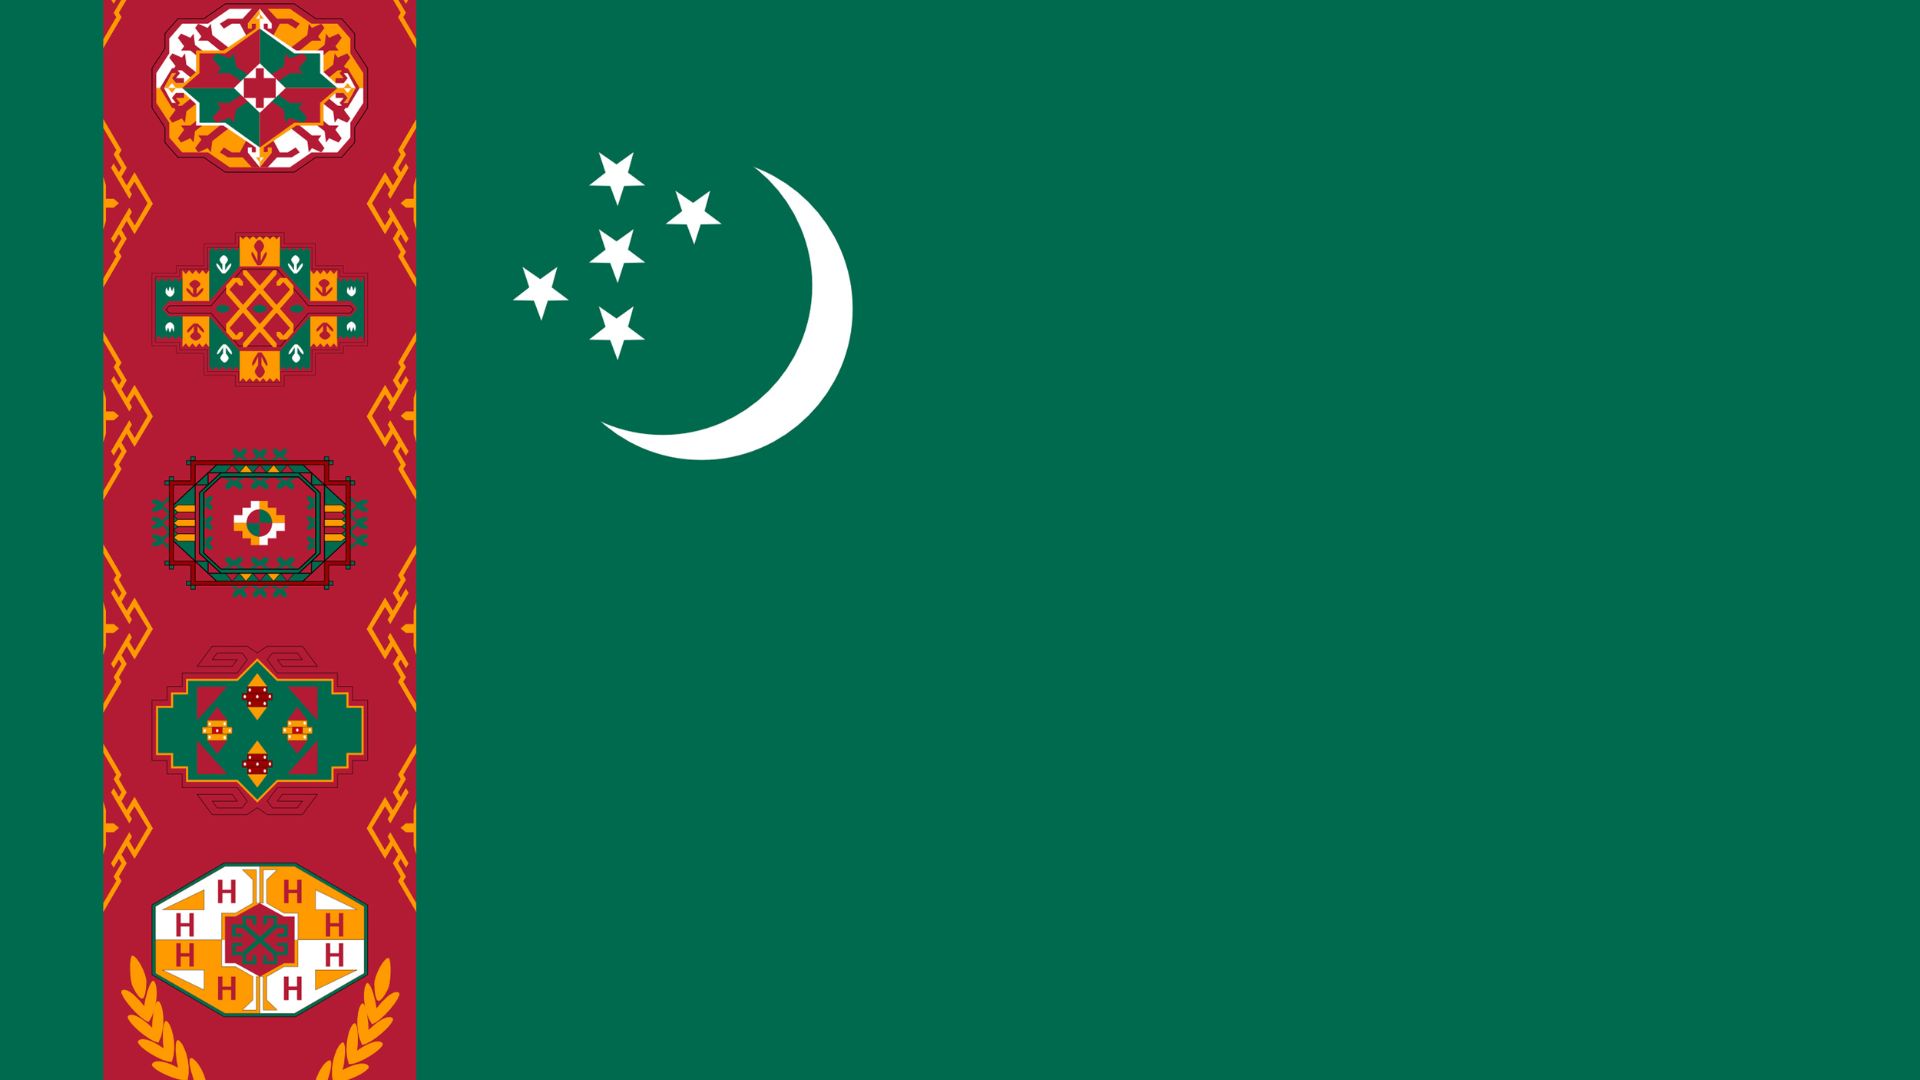 A bandeira do Turcomenistão, traz a cor verde e a lua crescente do islã que representam a fé do povo turcomeno e a esperança de um mundo melhor. Já as estrelas simbolizam as cinco regiões do país.